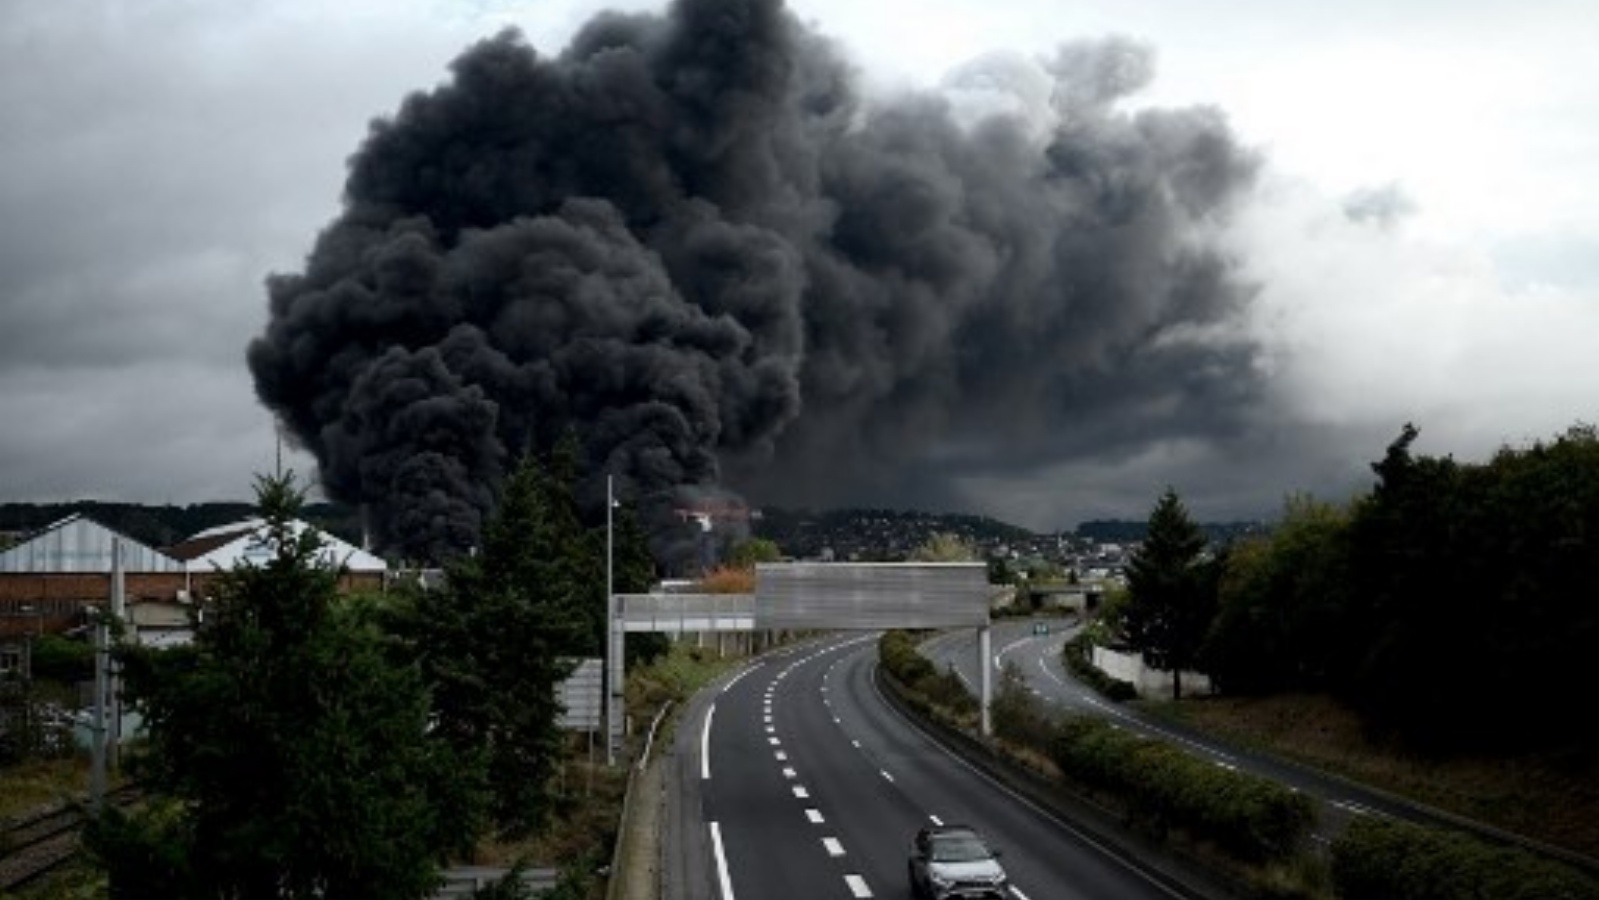 صورة التقطت في 26 أيلول/سبتمبر 2019 ، تظهر دخانًا يتصاعد من مصنع لوبريزول المصنفة انبعاثاته عالية الإحتراق في روان، فرنسا.